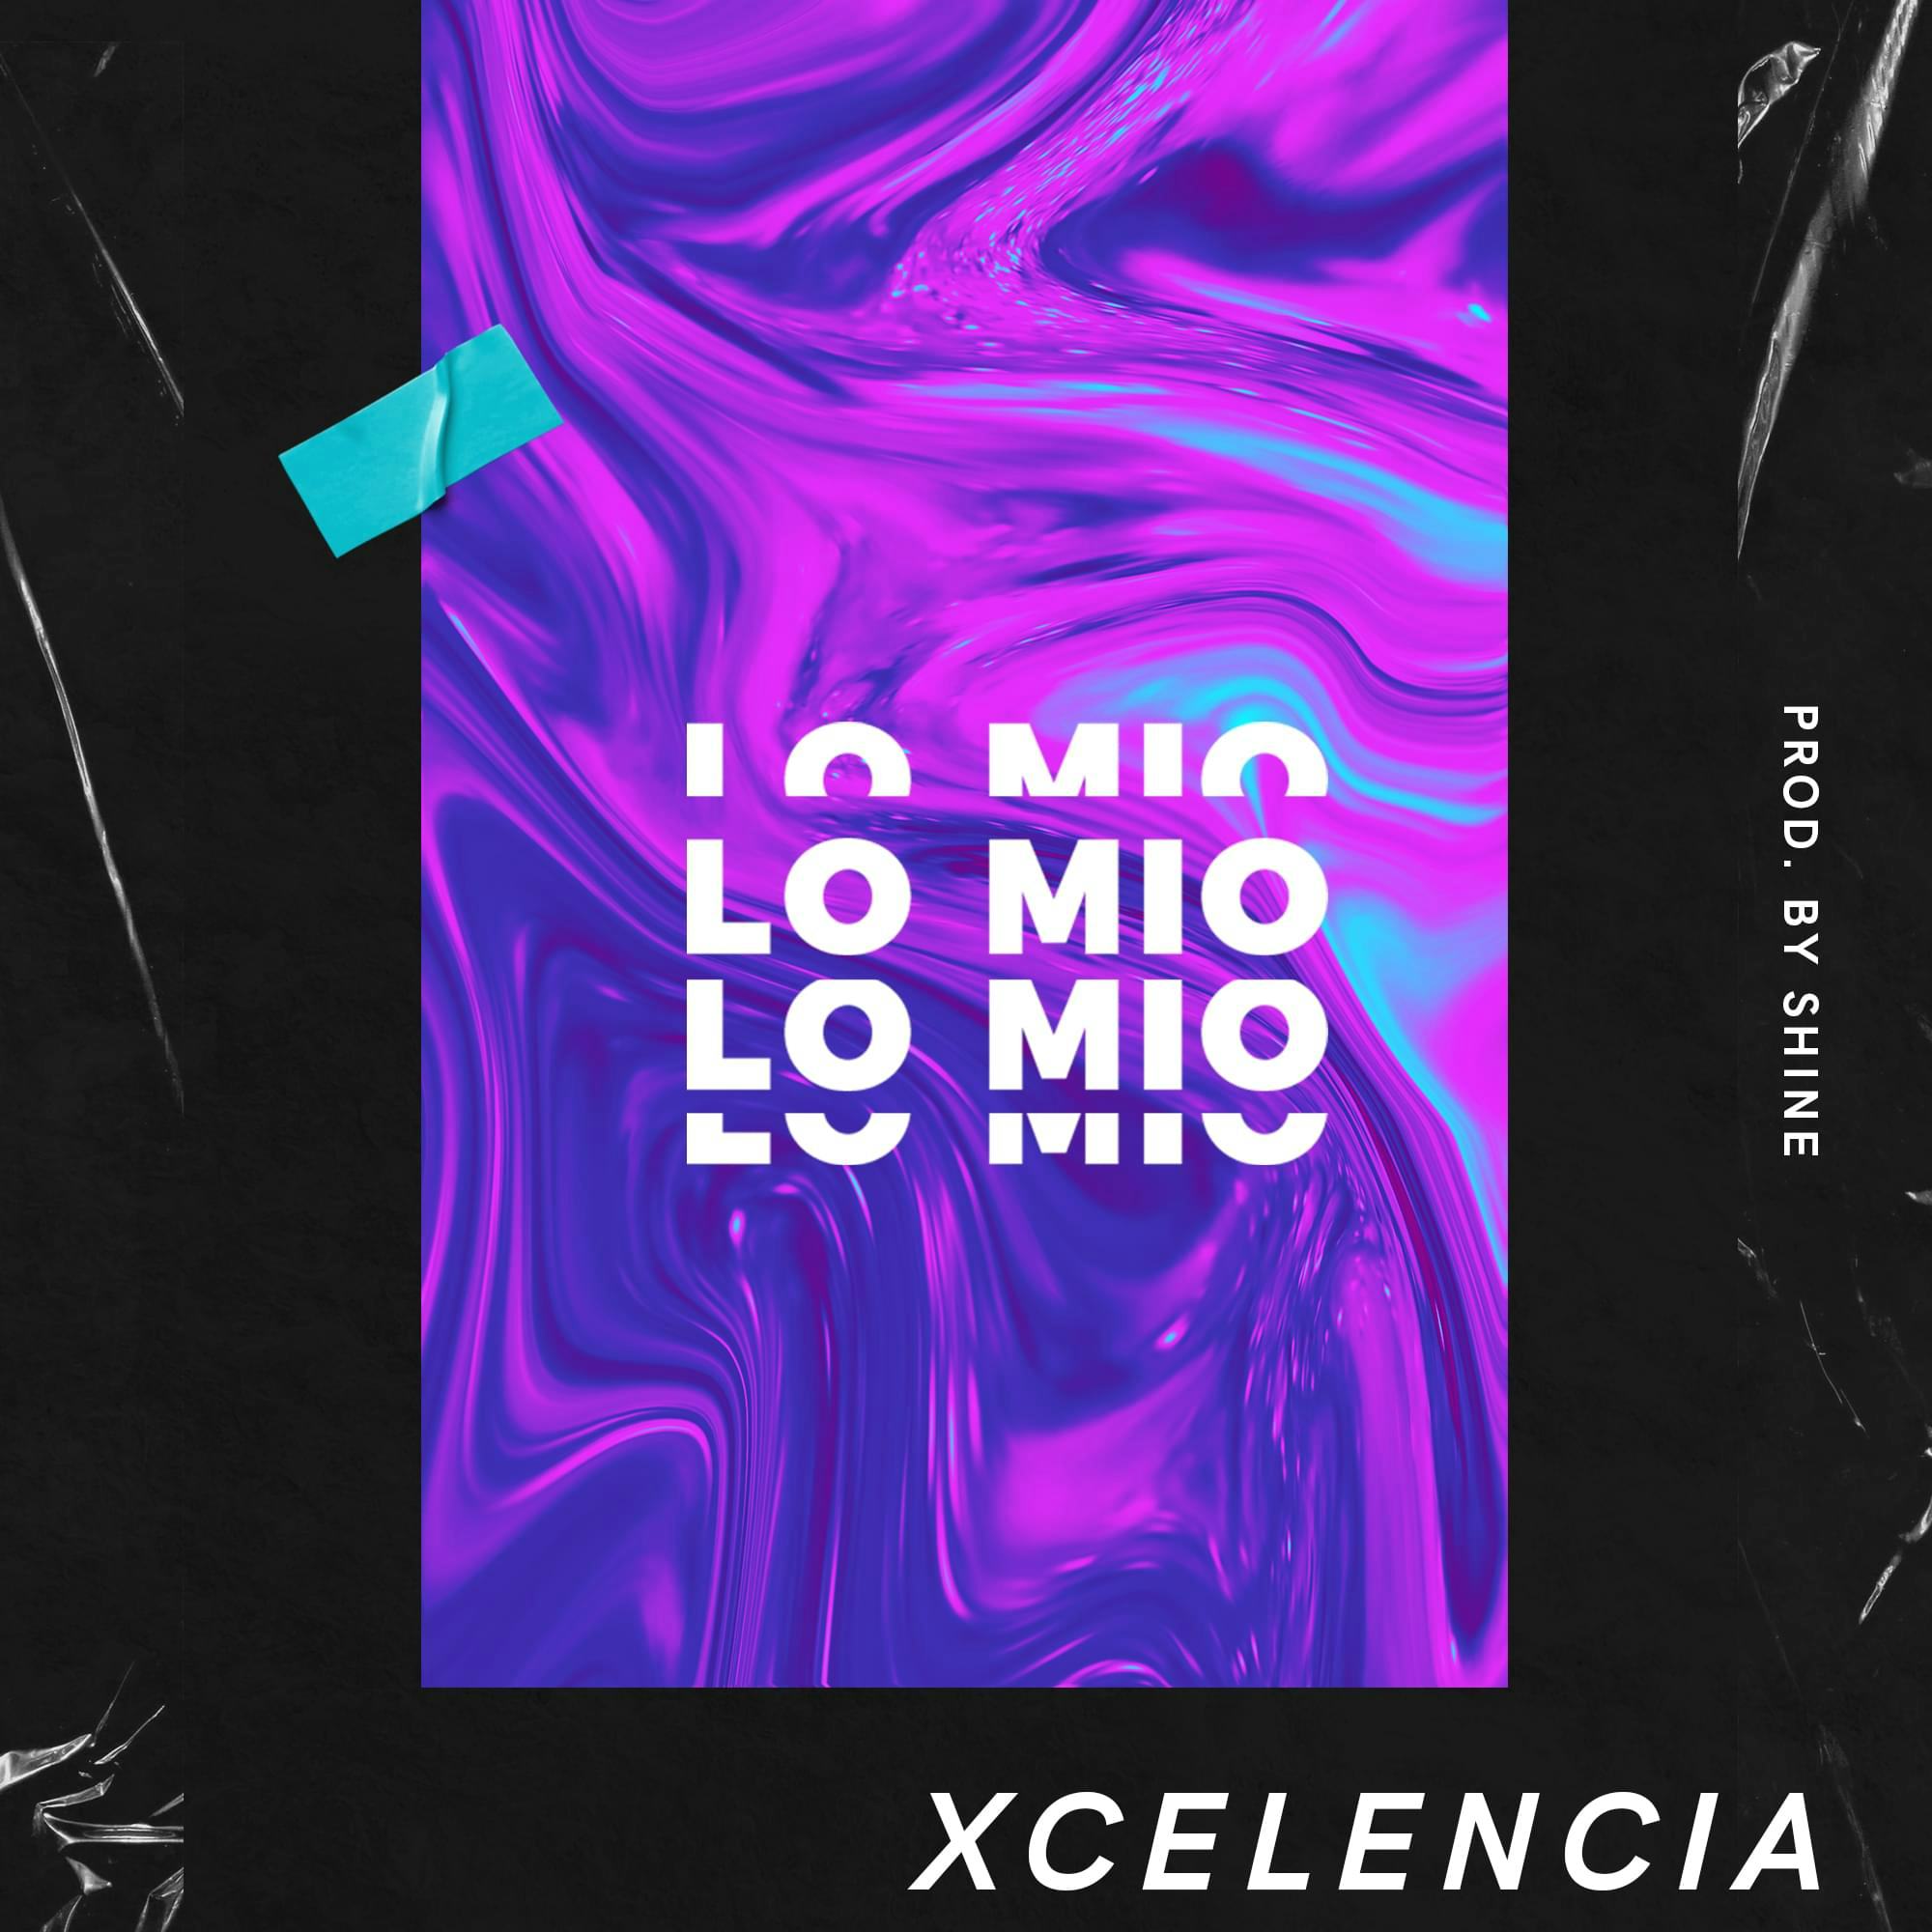 Cover art for lo mio (insomnio) by Xcelencia